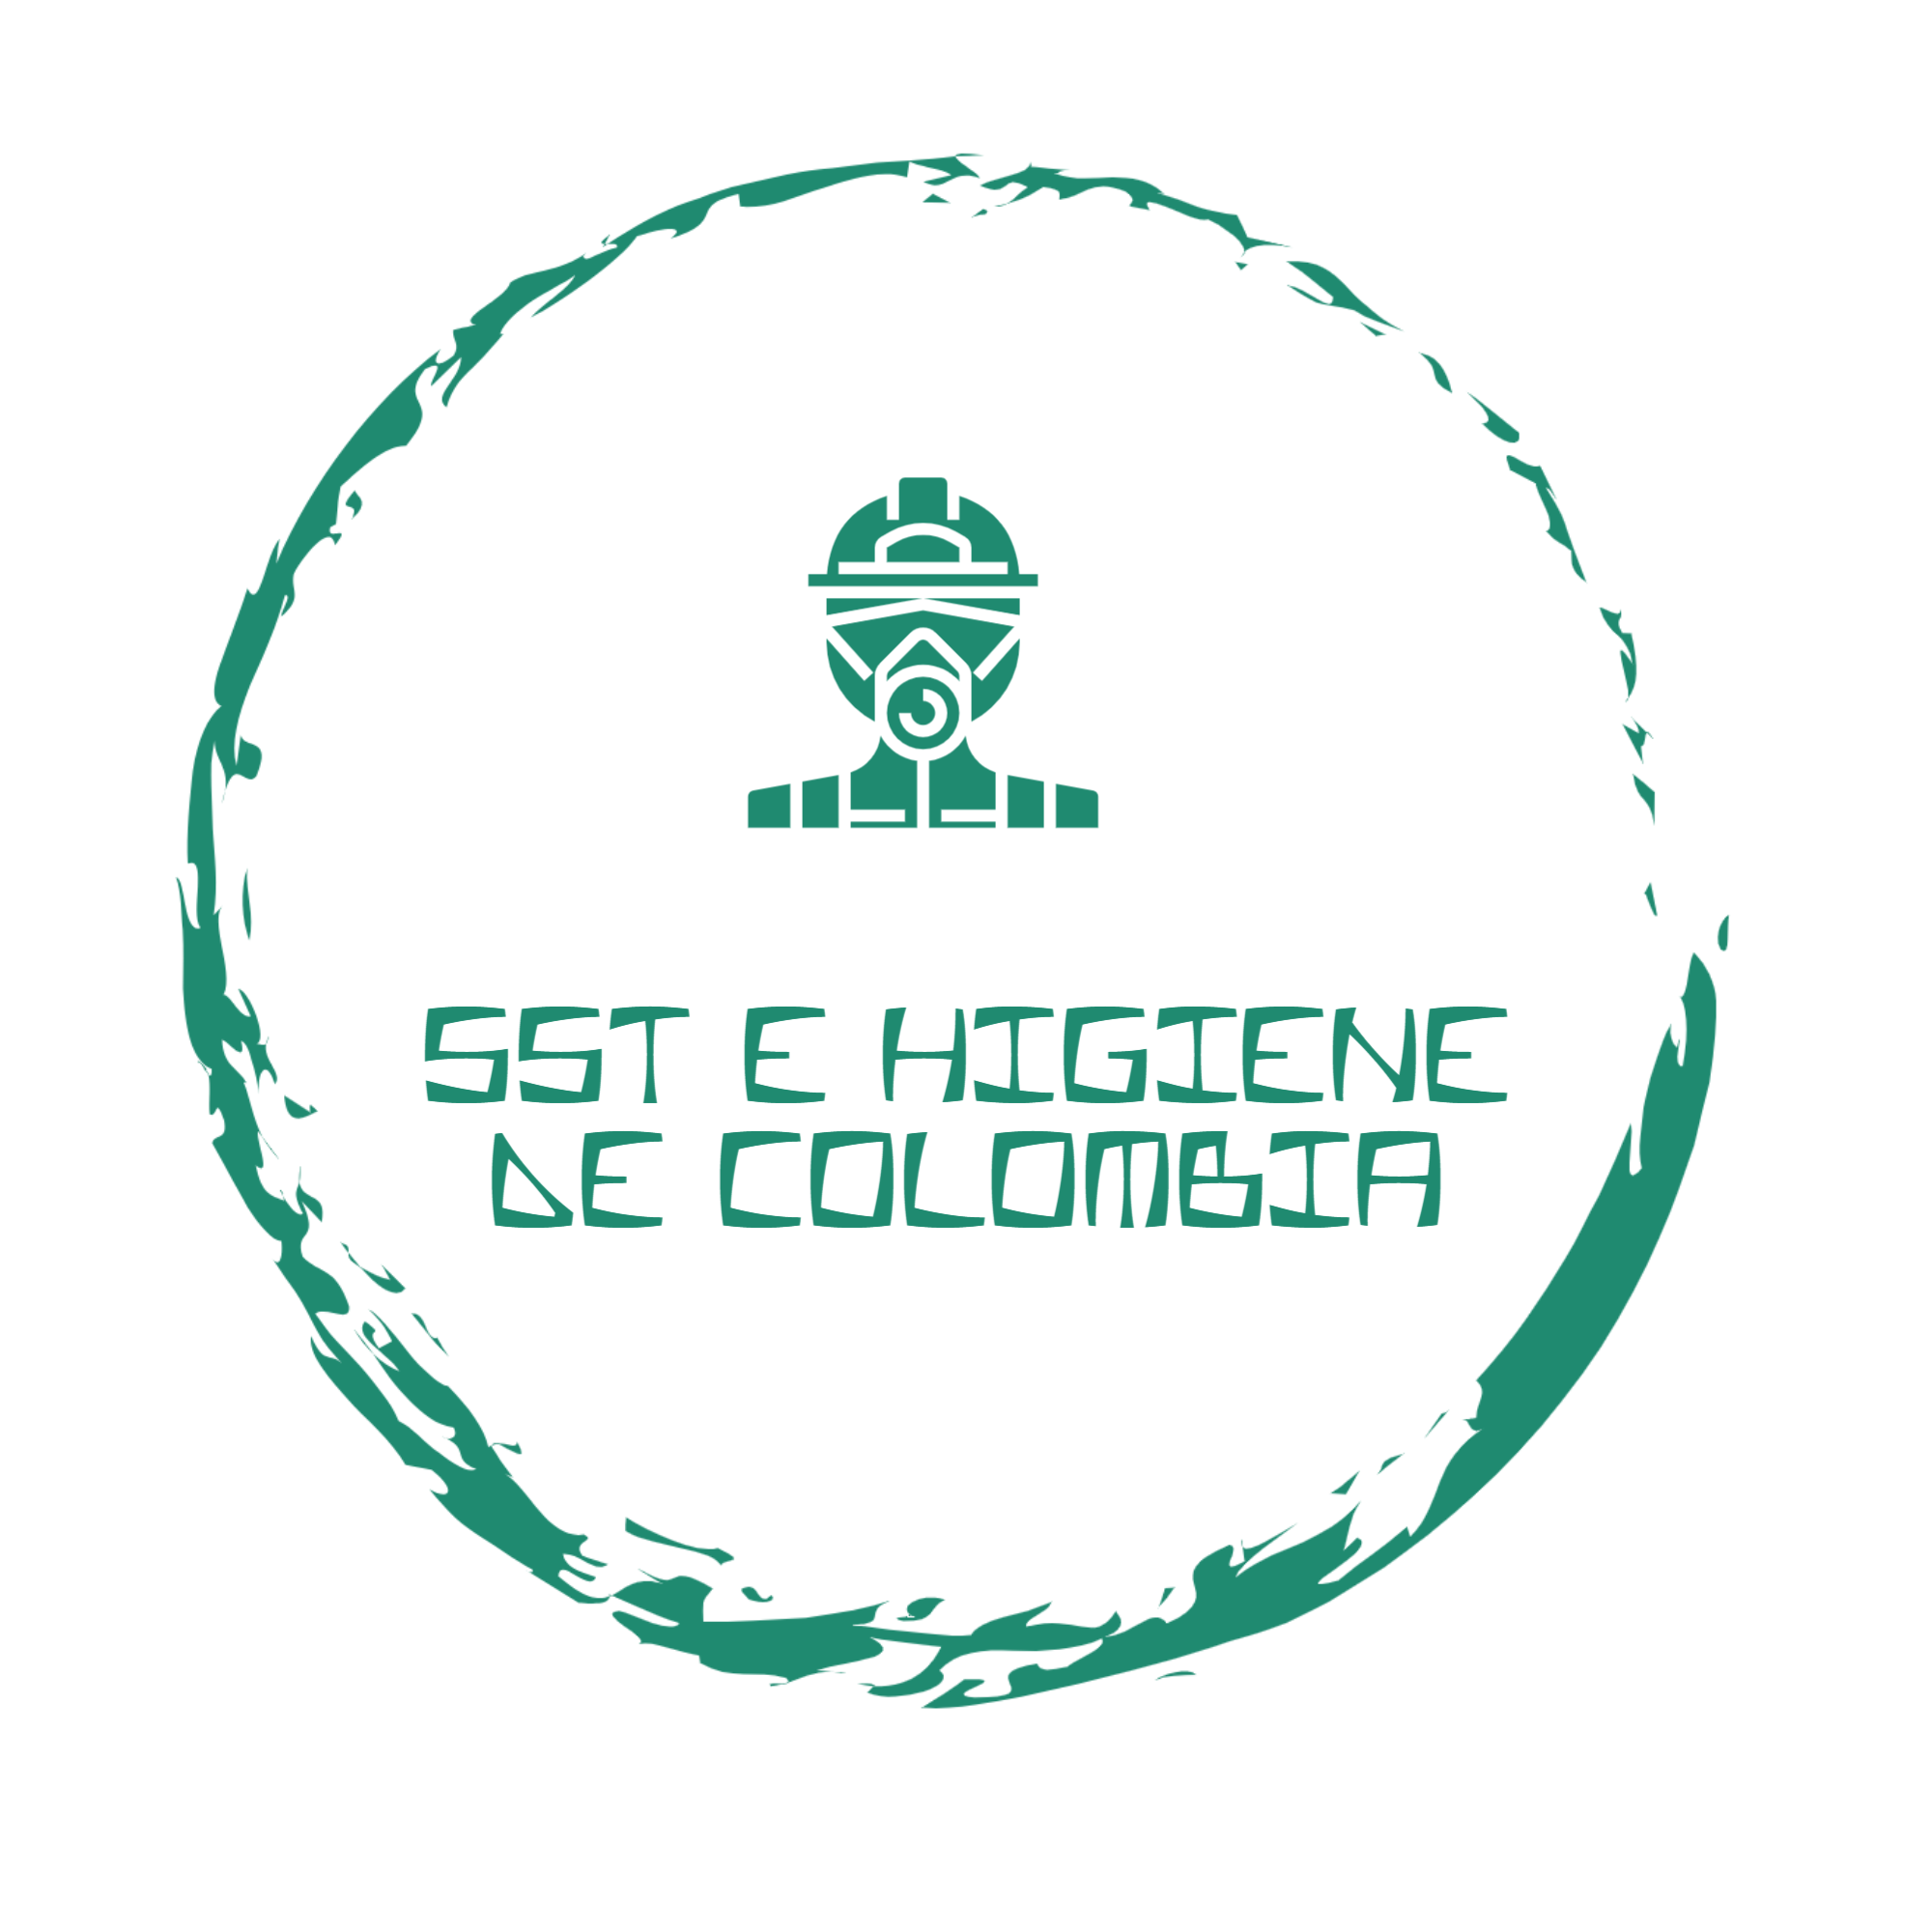 SST E HIGIENE DE COLOMBIA